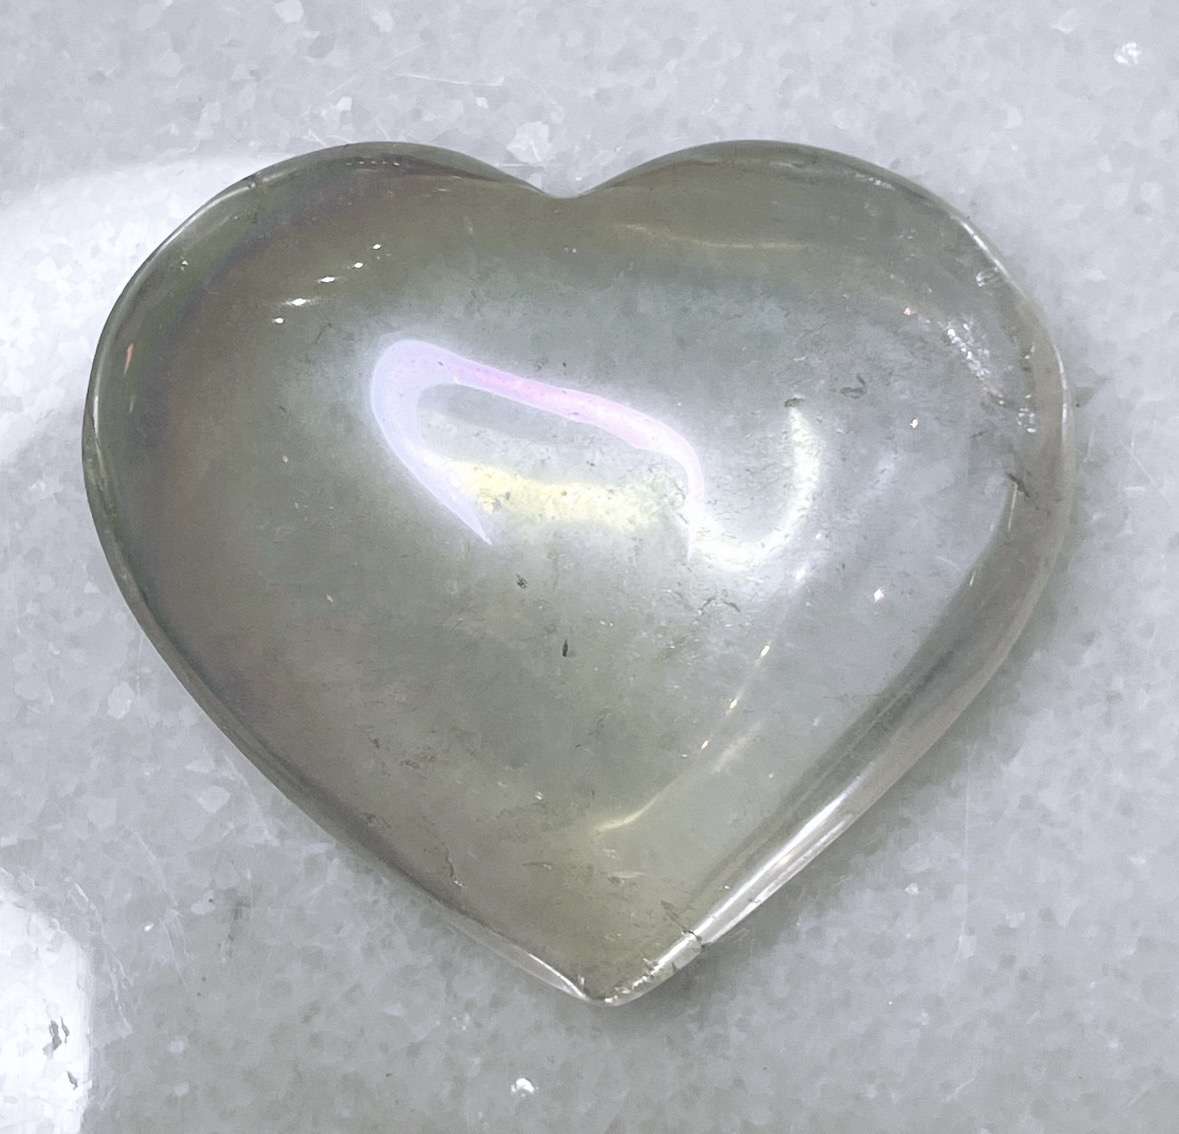 Bergkristall med aura, hjärta (A)